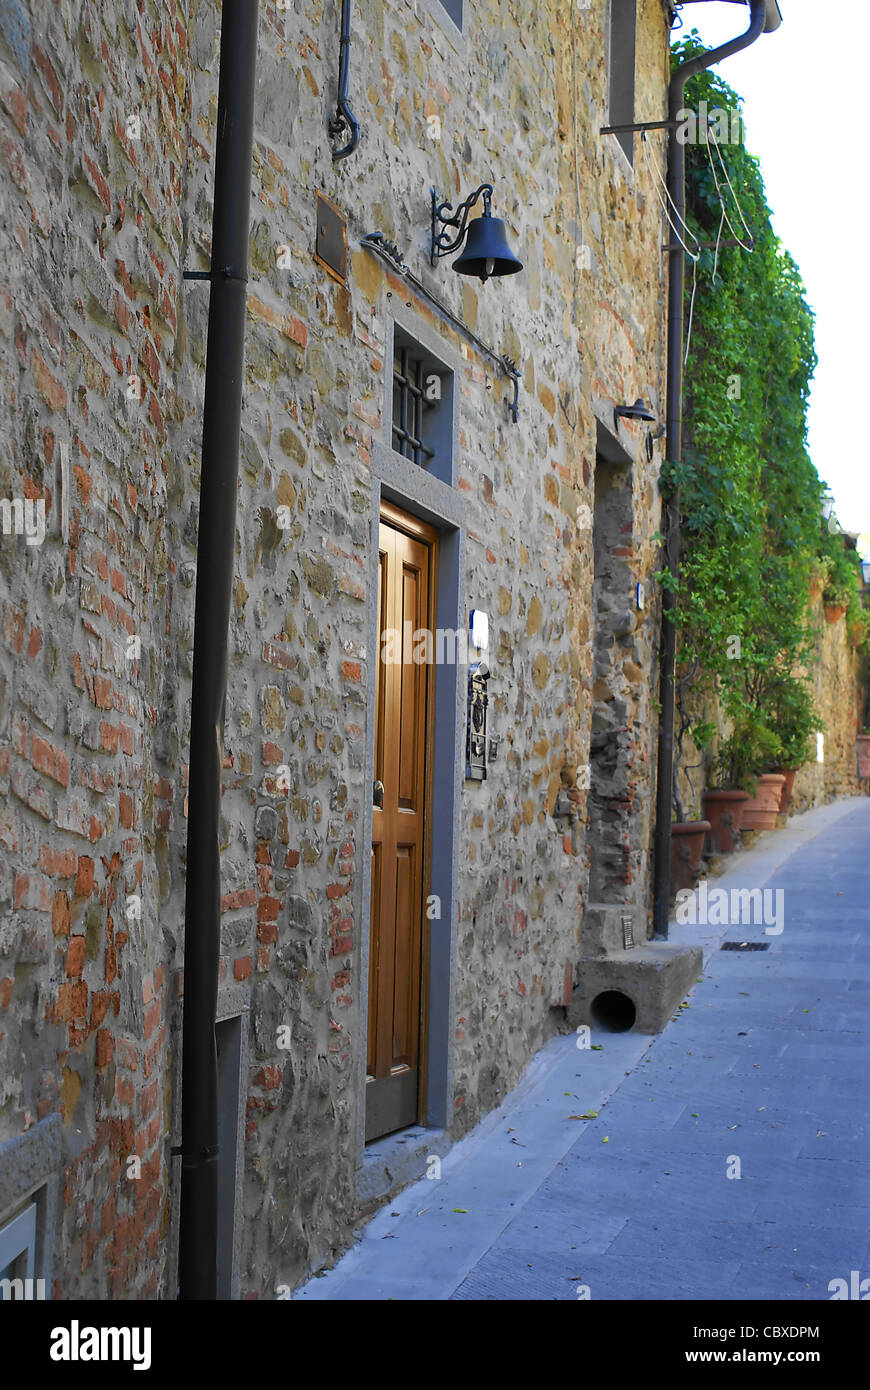 Bild von einem Olld Haus in der Toskana Stockfoto